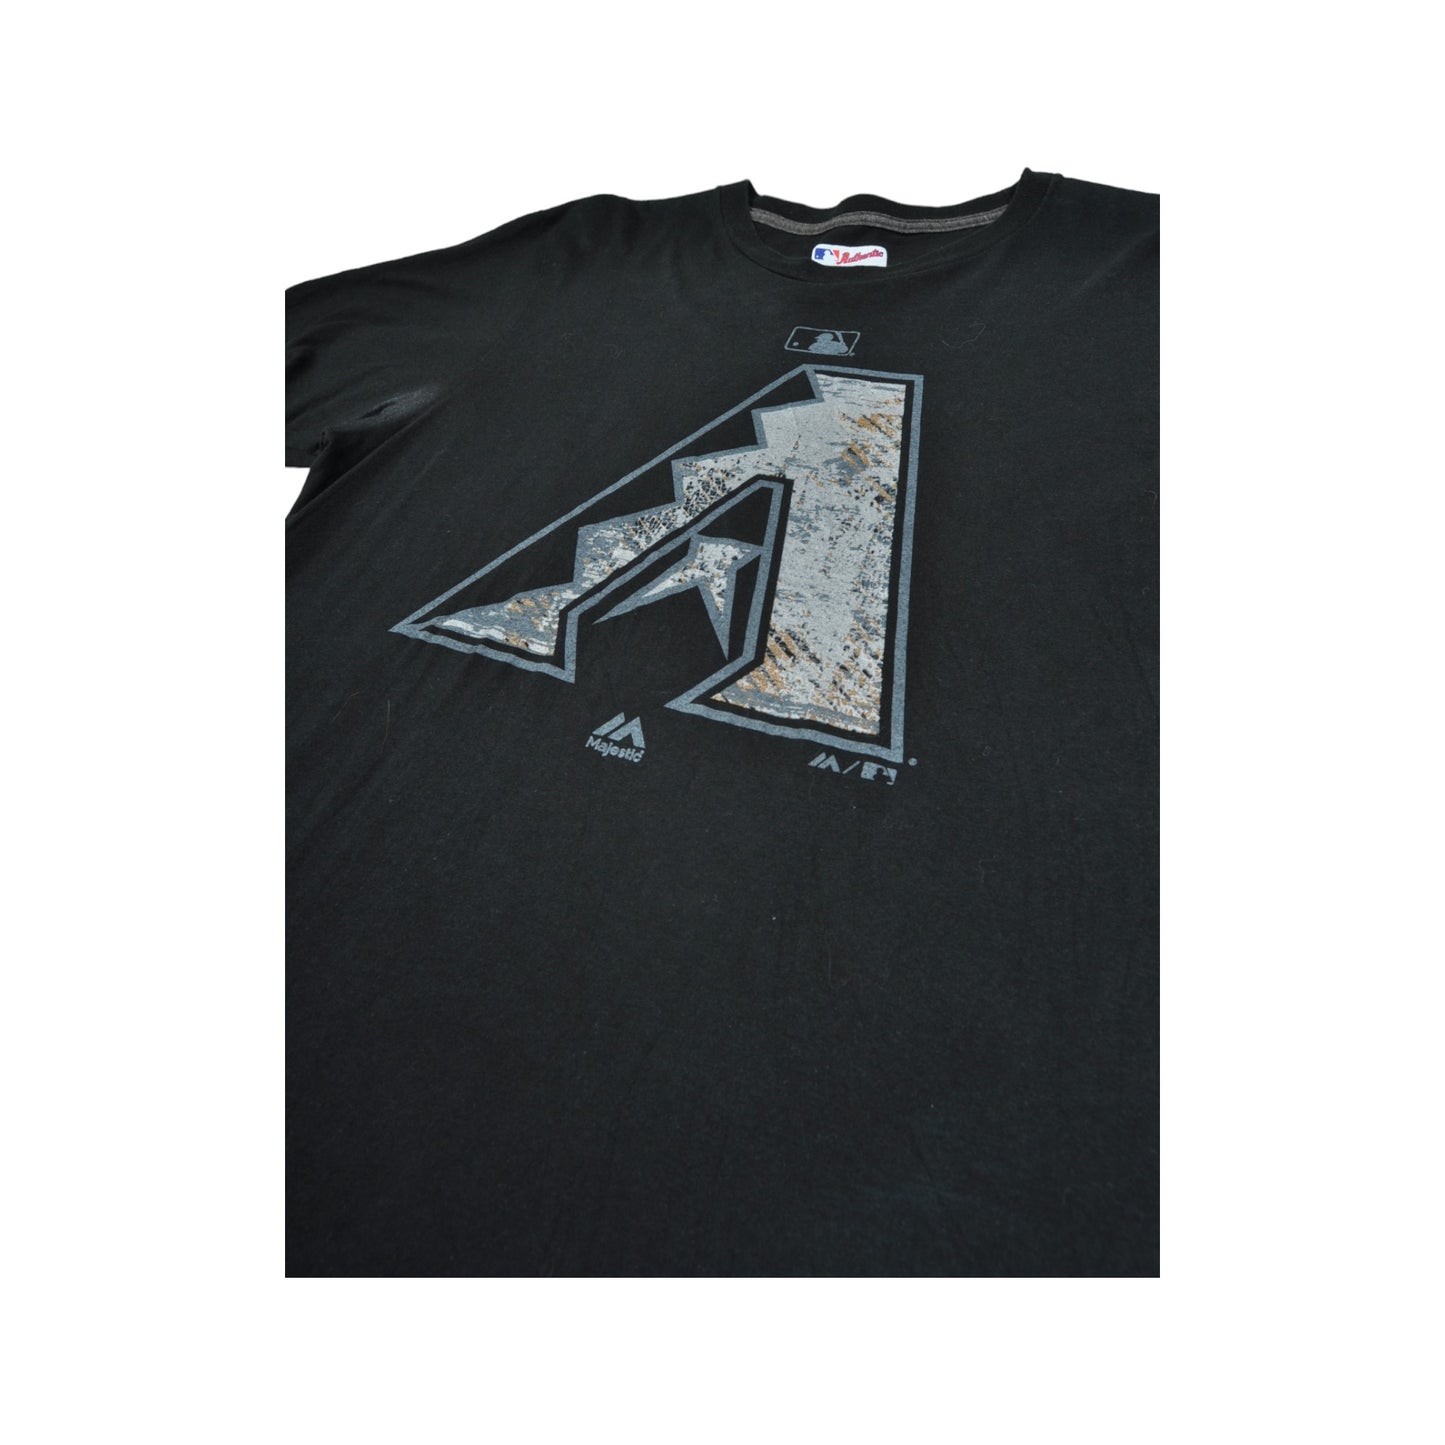 Vintage Arizona Diamondbacks Baseball Team T-Shirt Black Medium